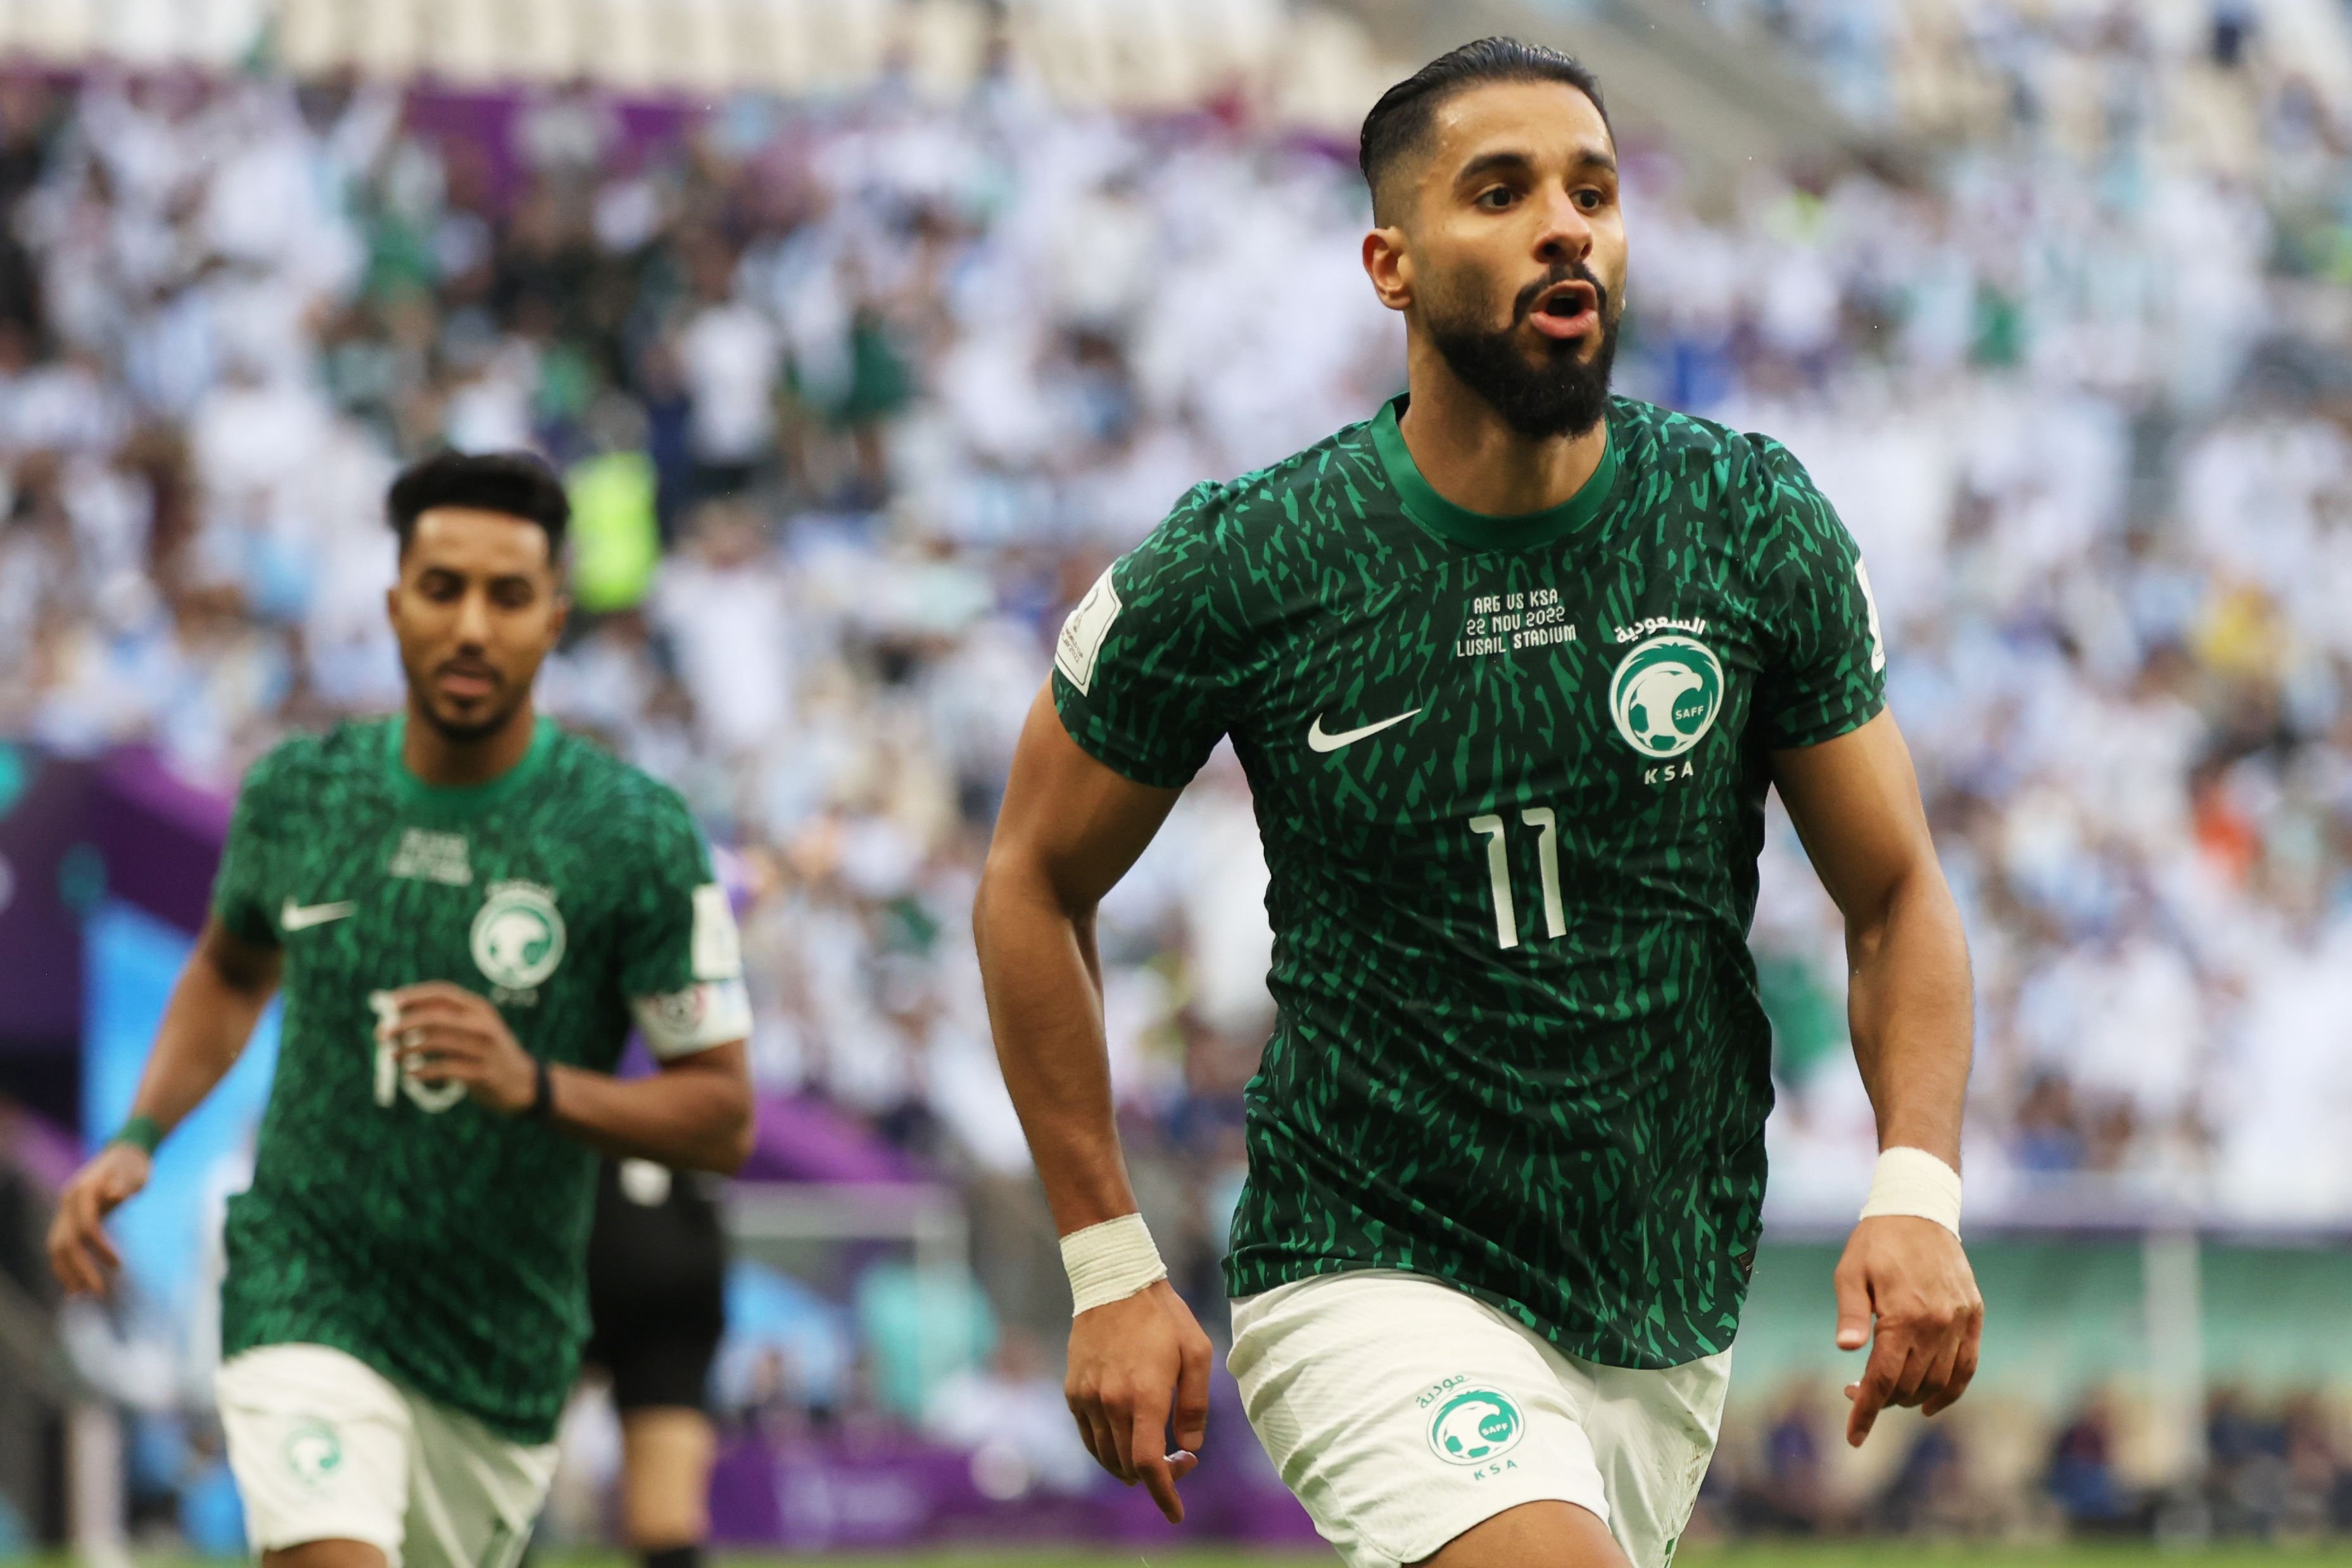 Svetsko prvenstvo 2022: O usponu fudbalu u Saudijskoj Arabiji sa srpskim trenerima i igraèima